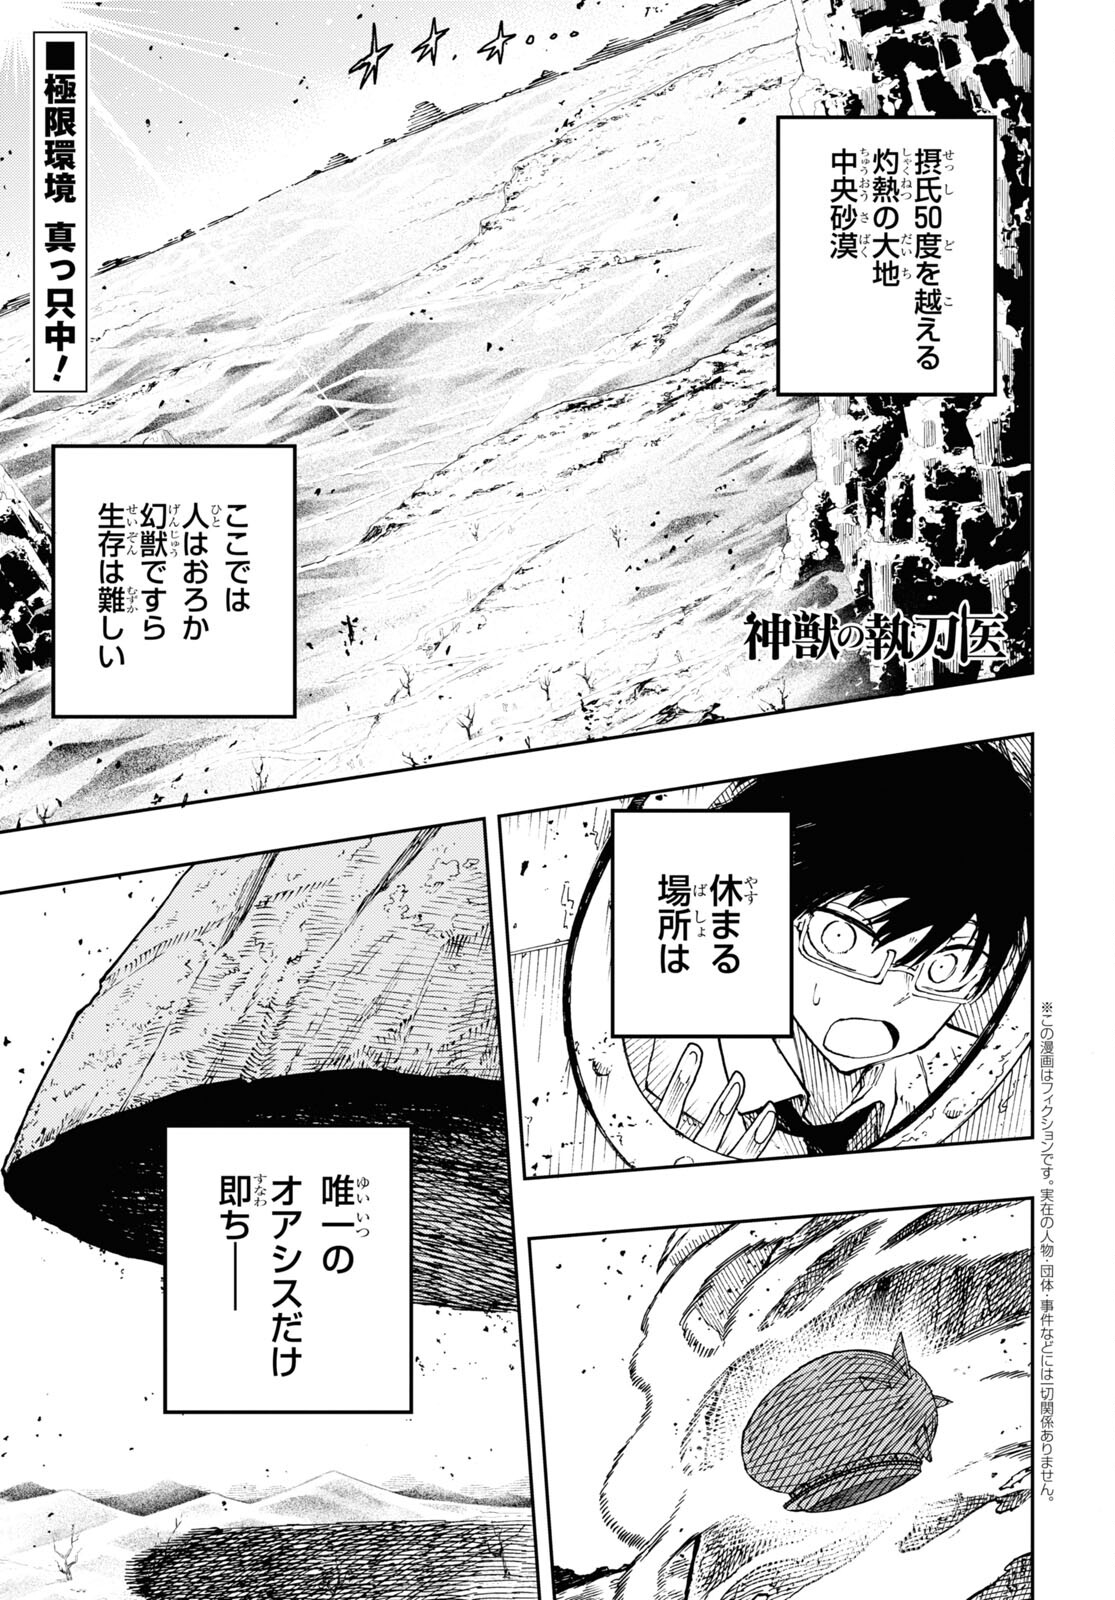 Shinjuu no Shittoui - Chapter 10 - Page 1